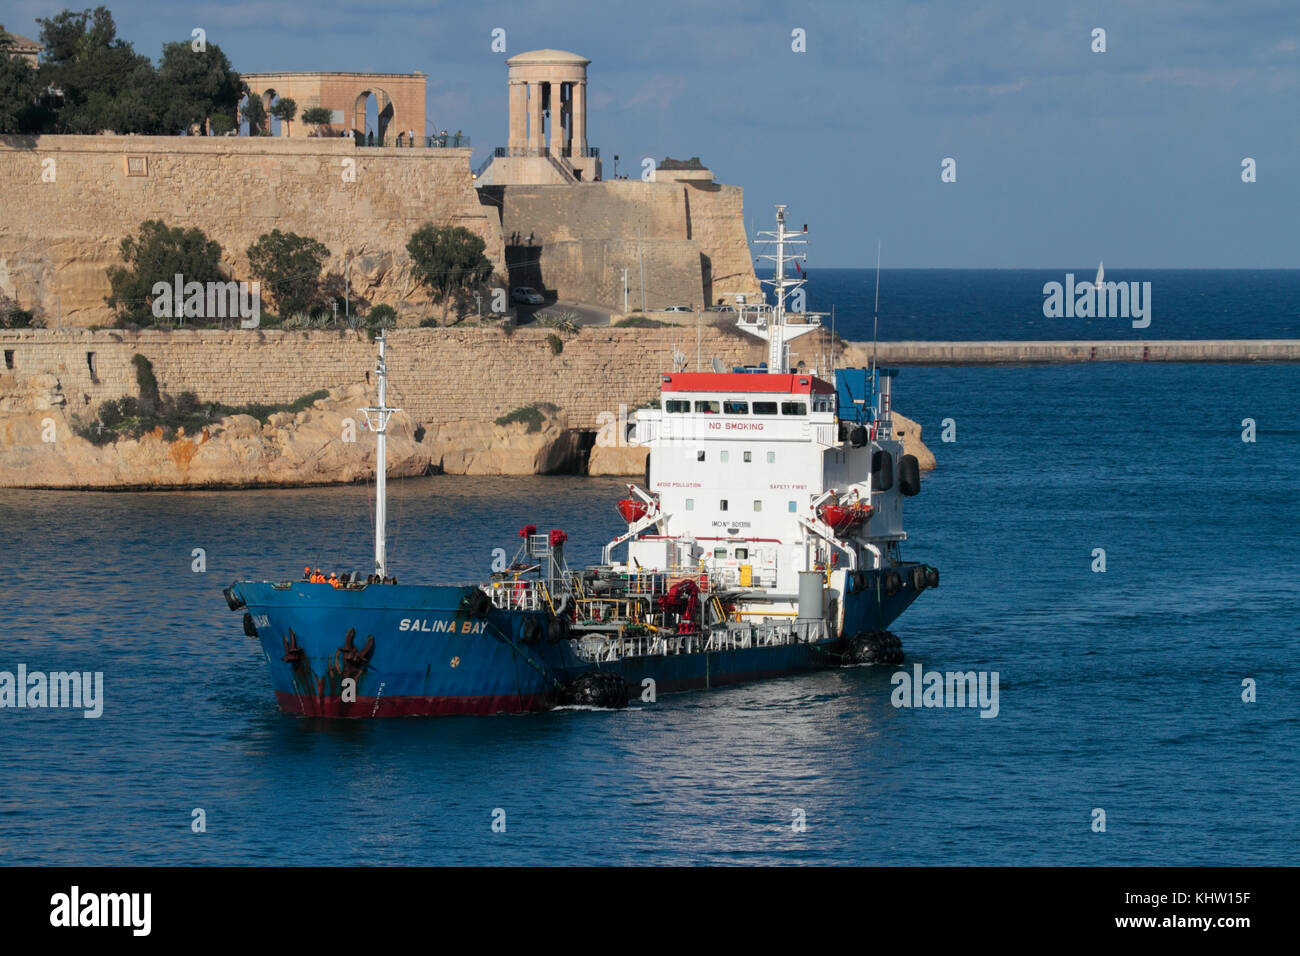 Il Bunkering vaso Salina Bay entrando nel porto di Malta. Offshore (bunkeraggio il rifornimento delle navi) è un importante attività economica di Malta. Foto Stock